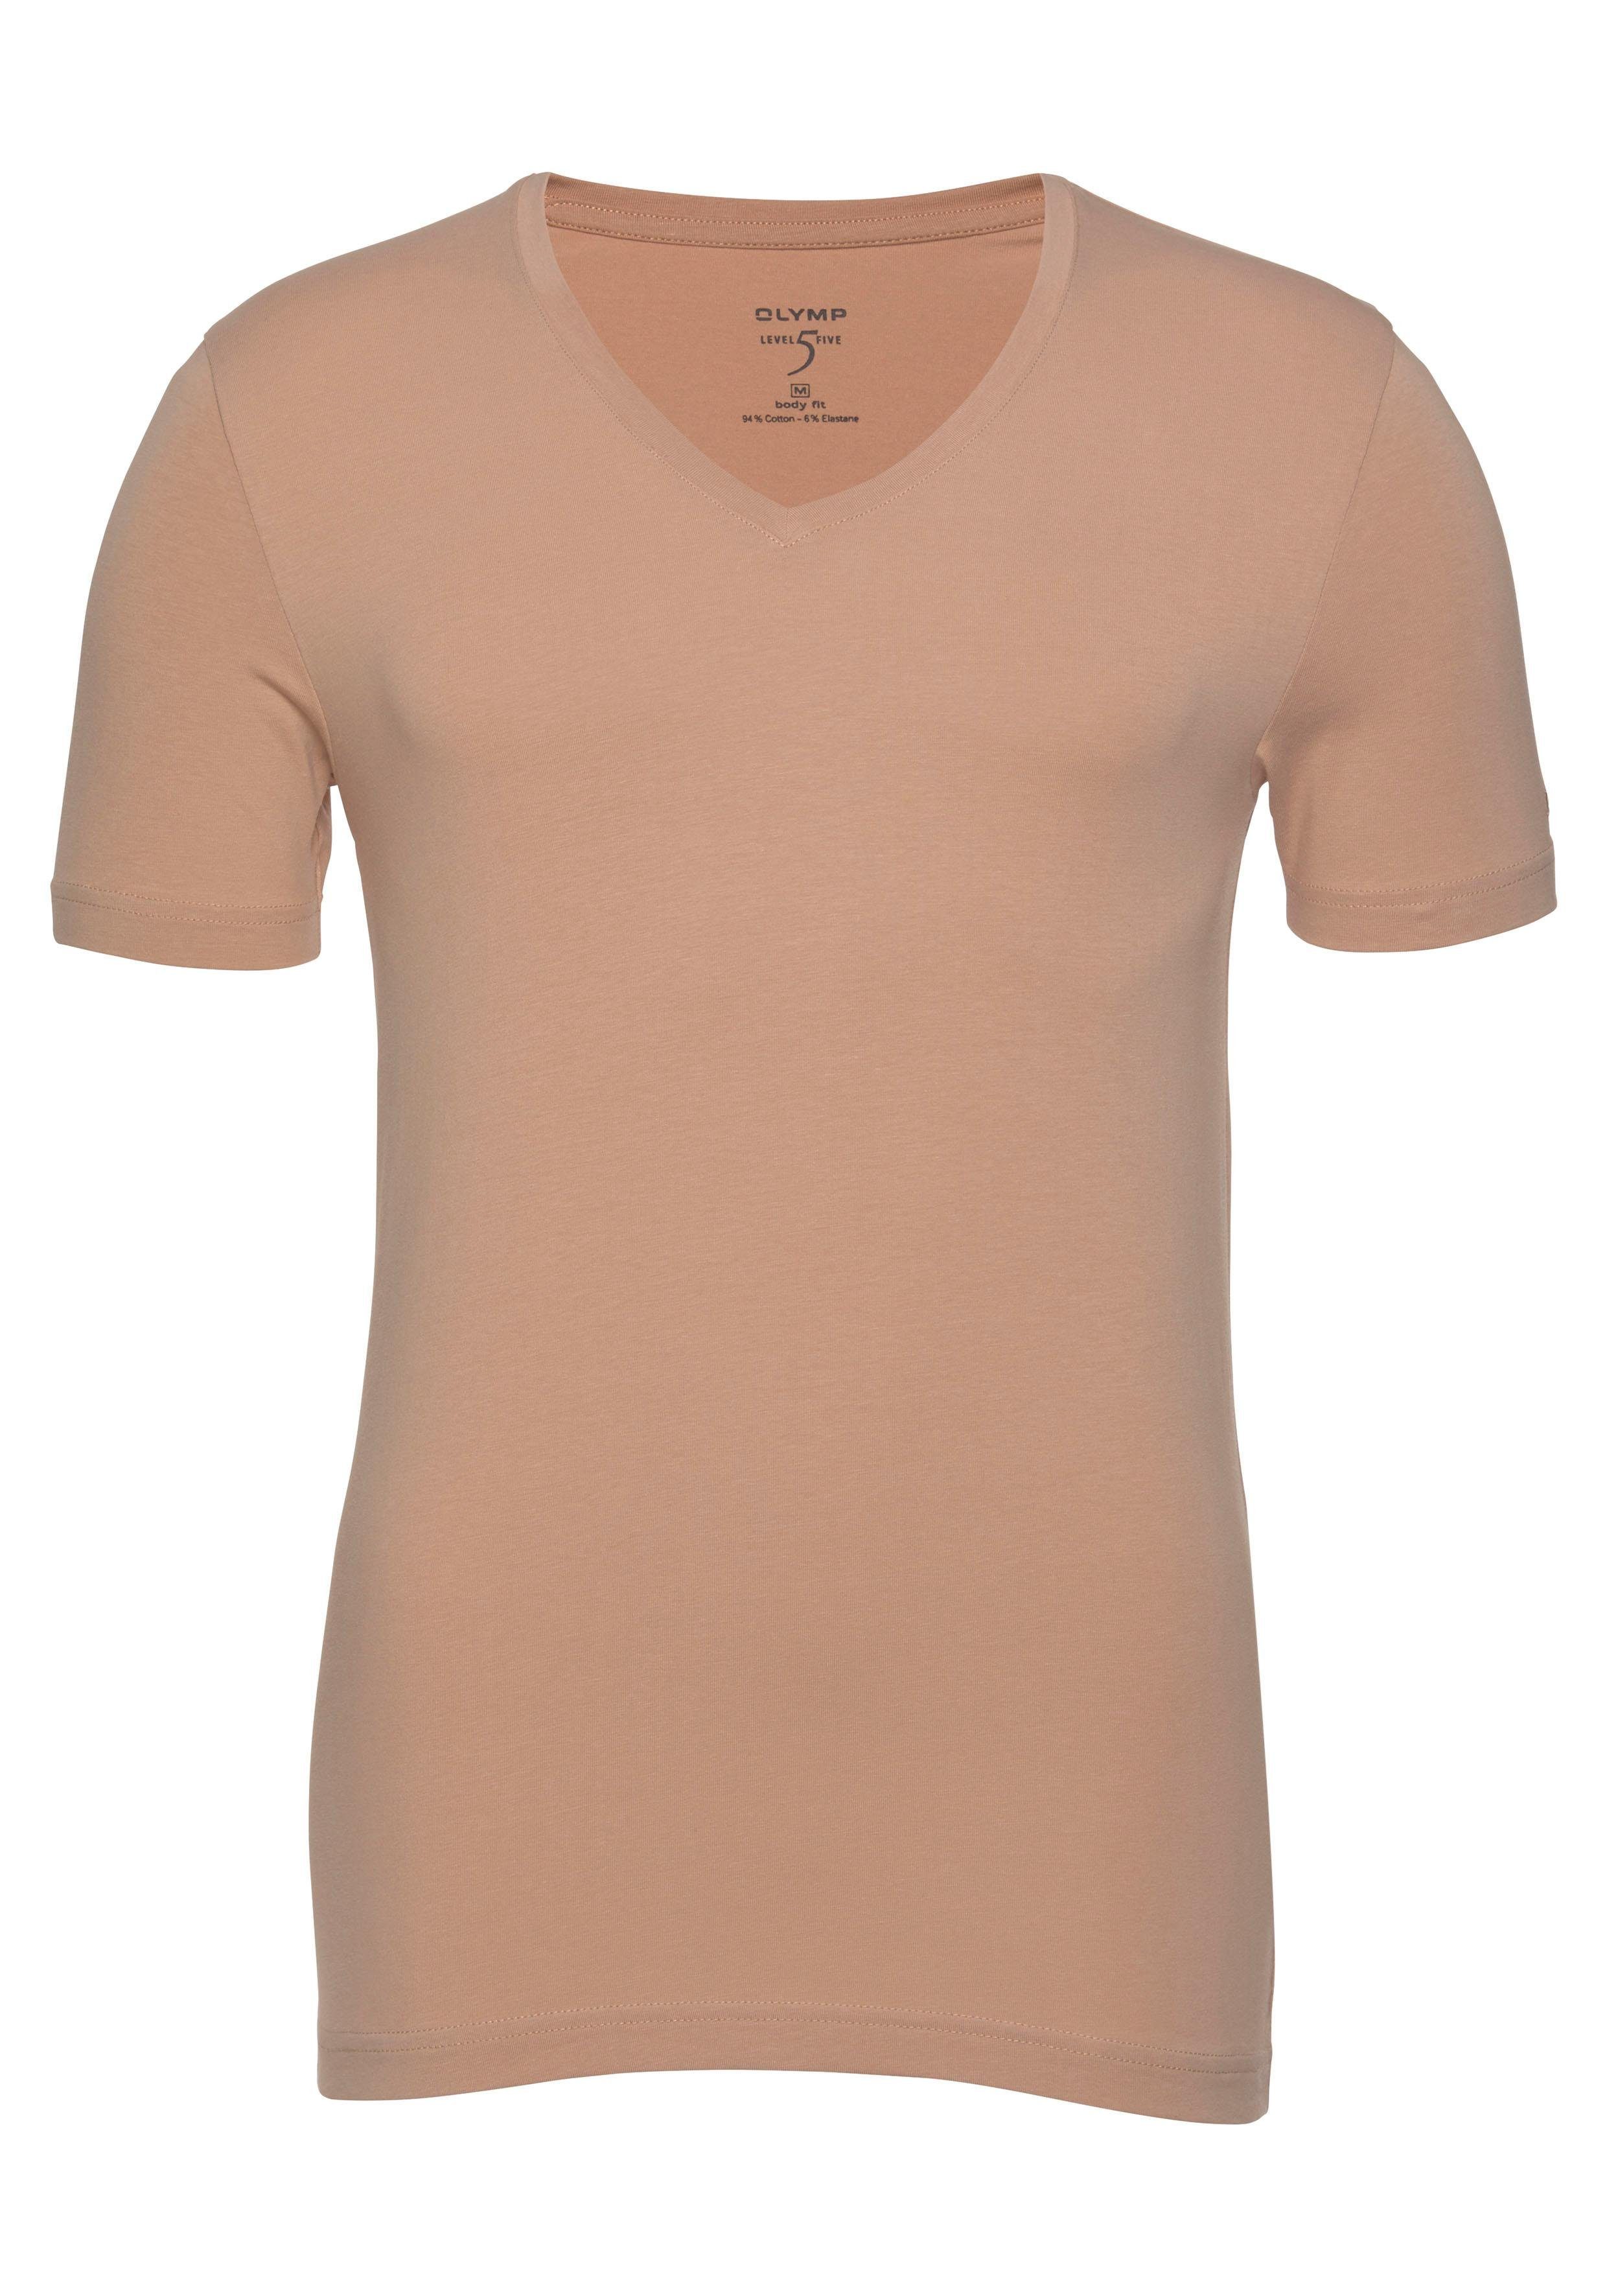 Five zum T-Shirt body beige fit Ideal Unterziehen OLYMP V-Ausschnitt, Level